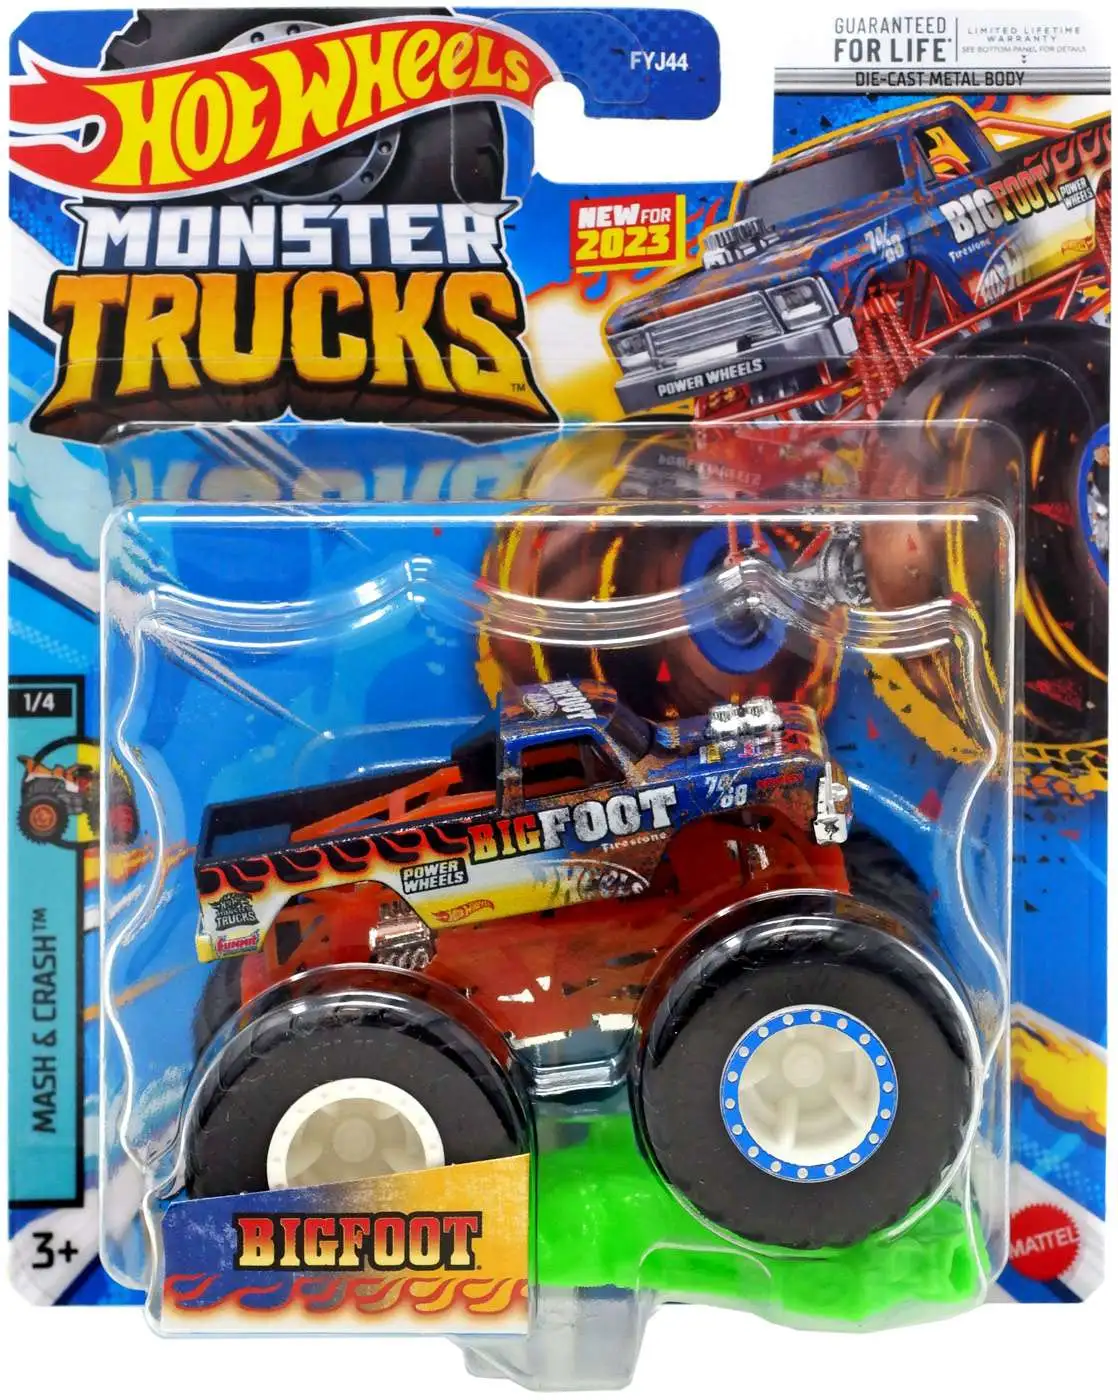 World's Smallest Hot Wheels Monster Truck, Series 2